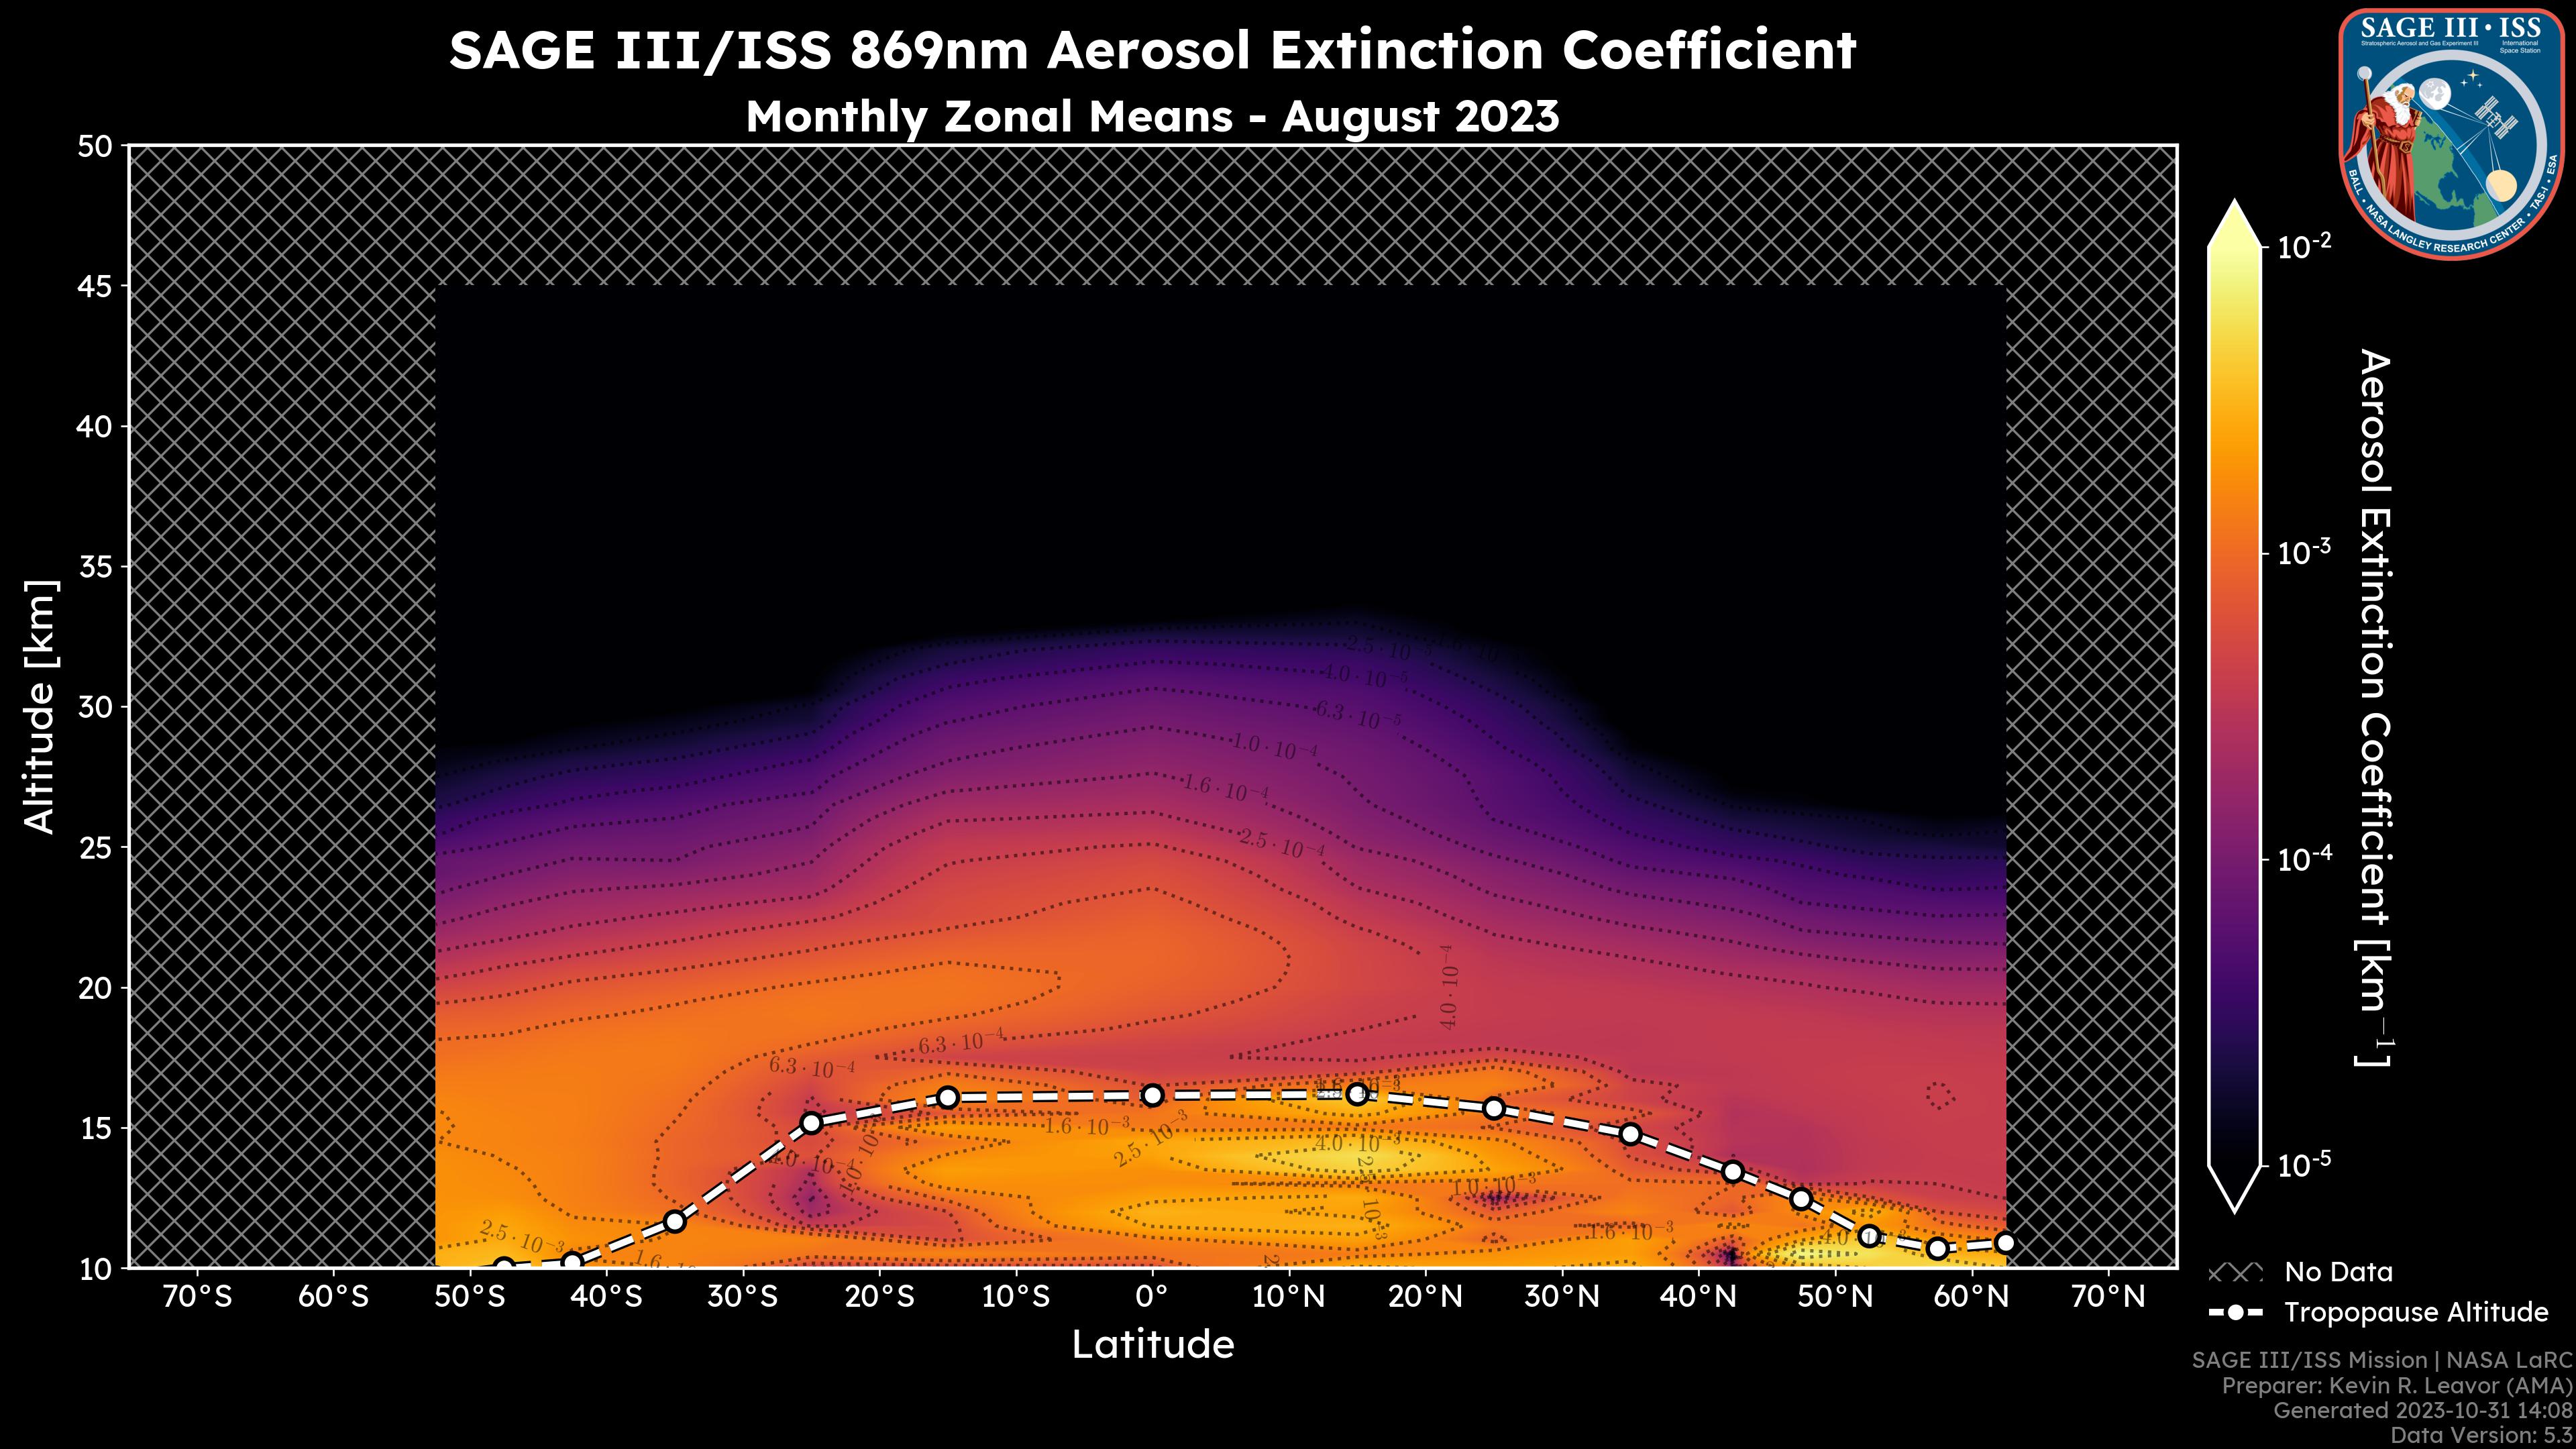 869nm Aerosol Extinction Coefficient